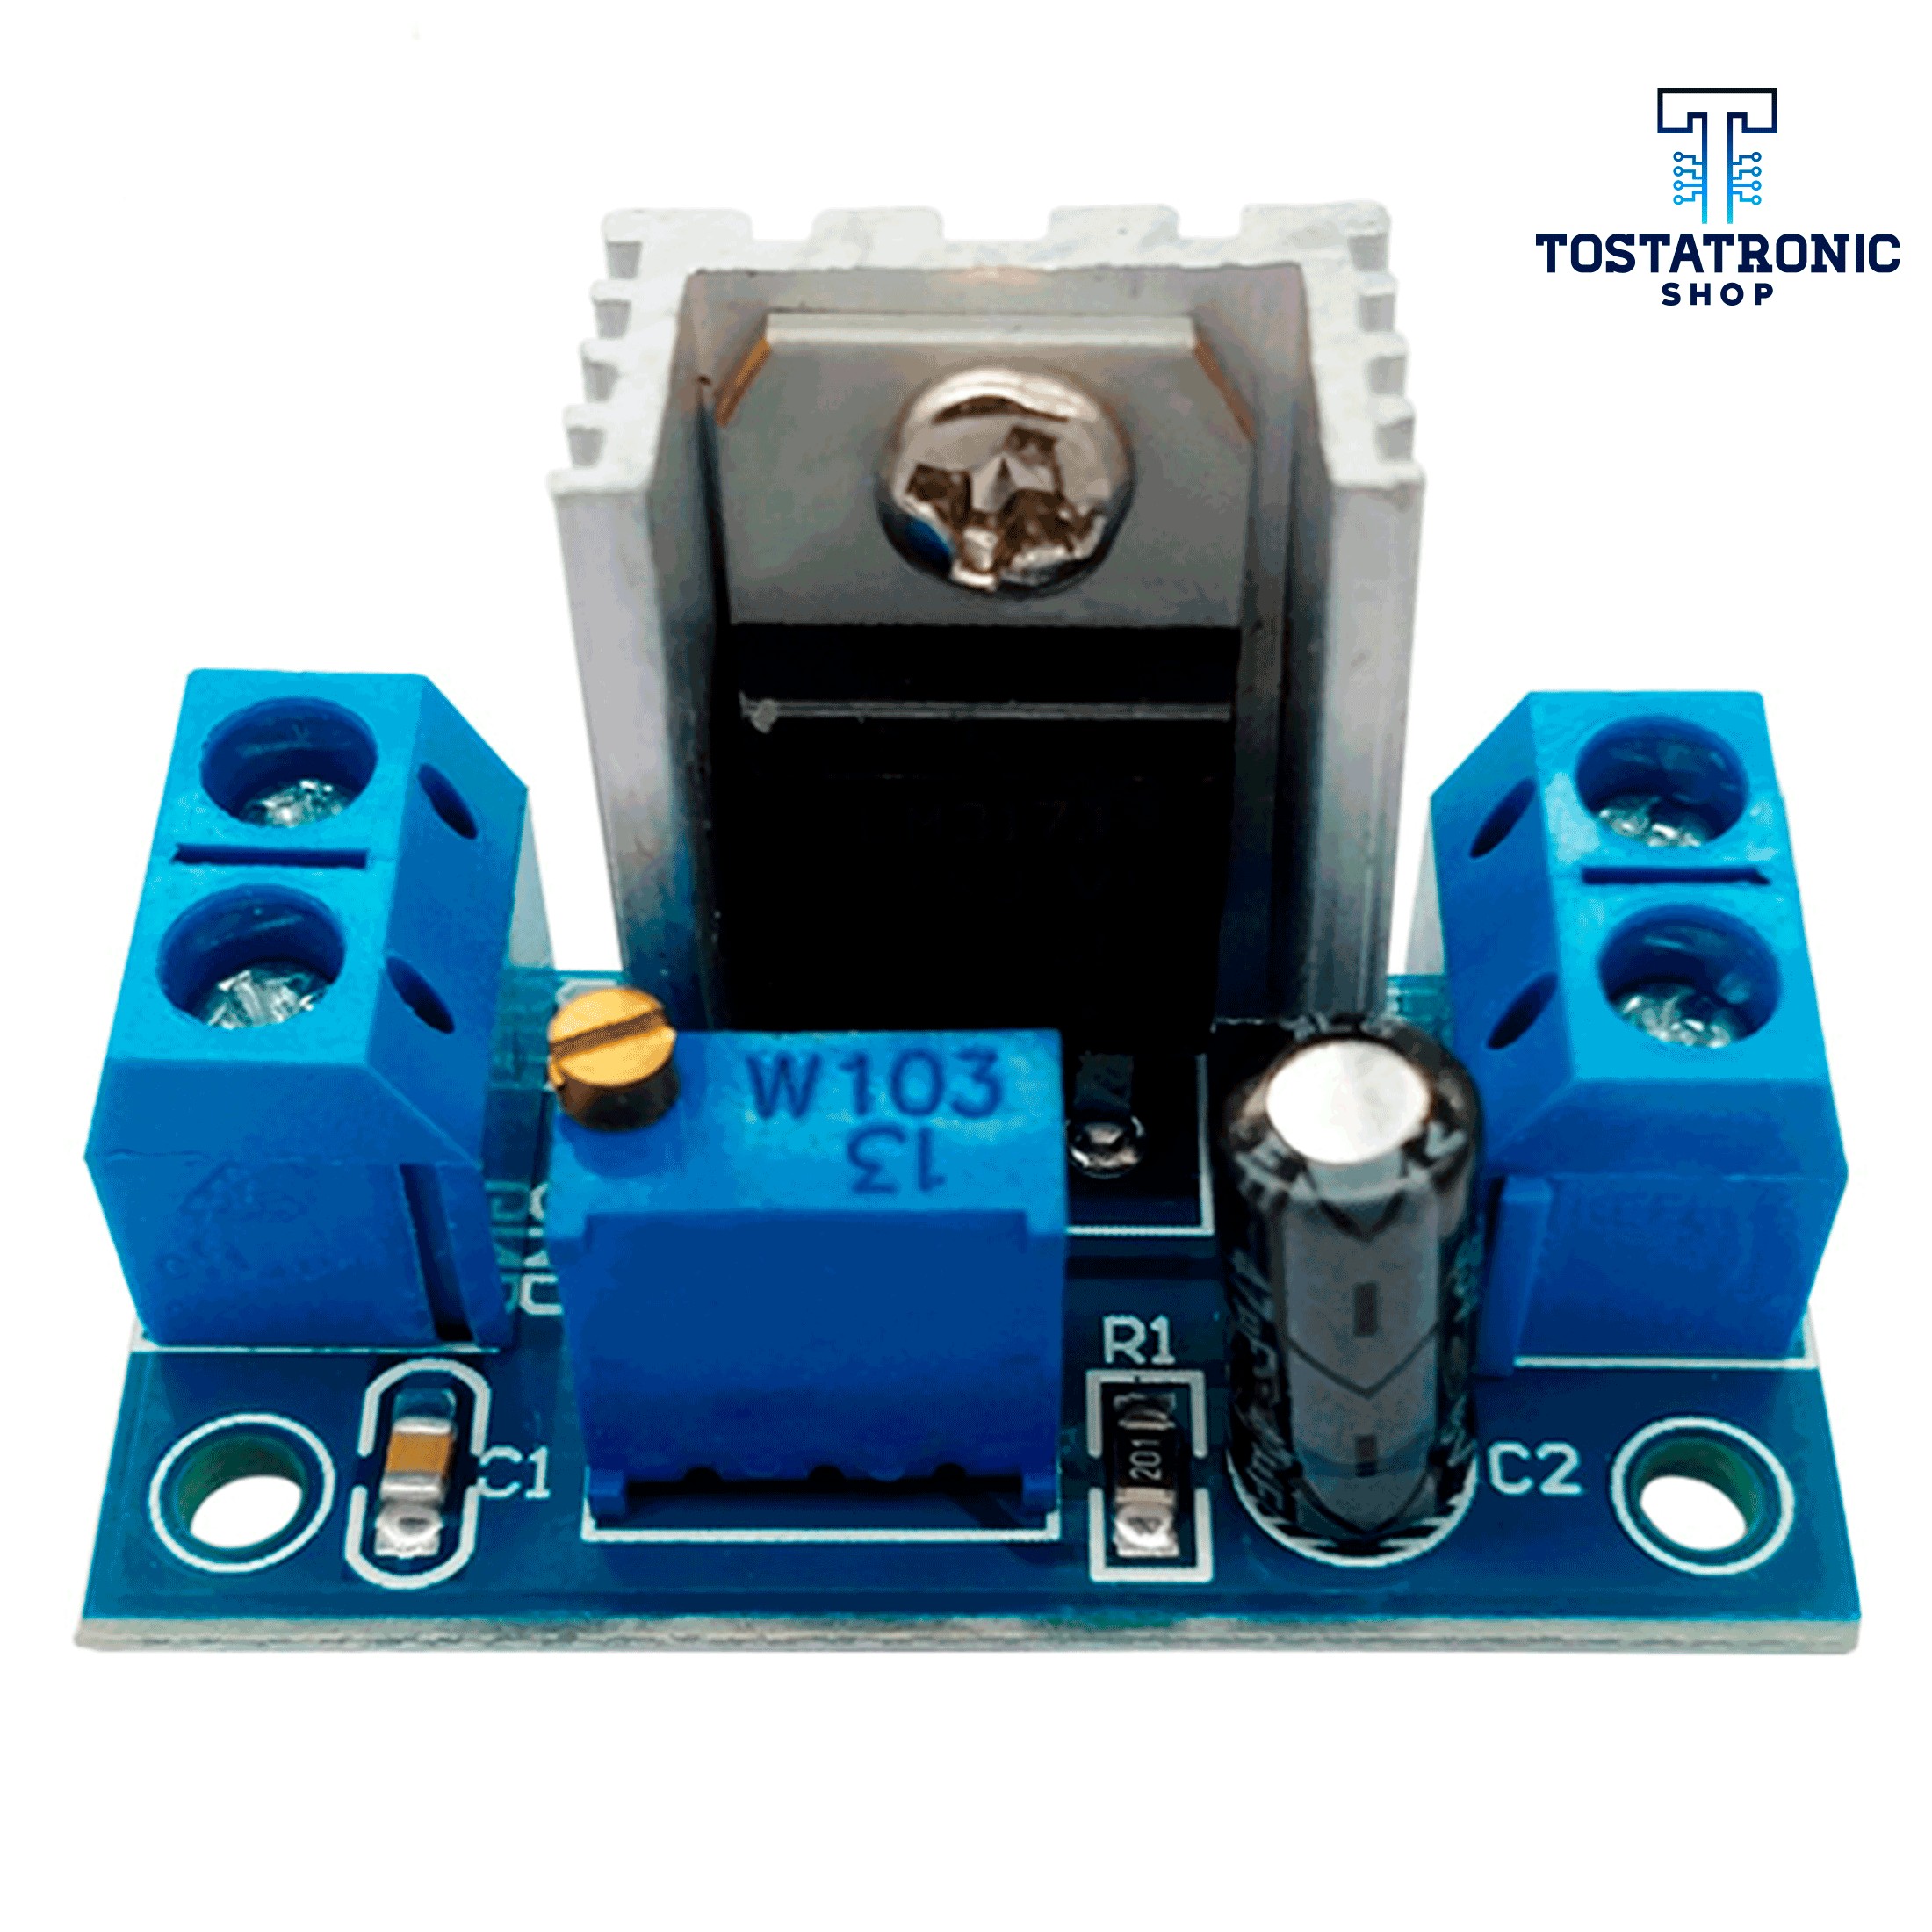 Regulador de Voltaje ajustable - LM317 Sparkfun COM-00527